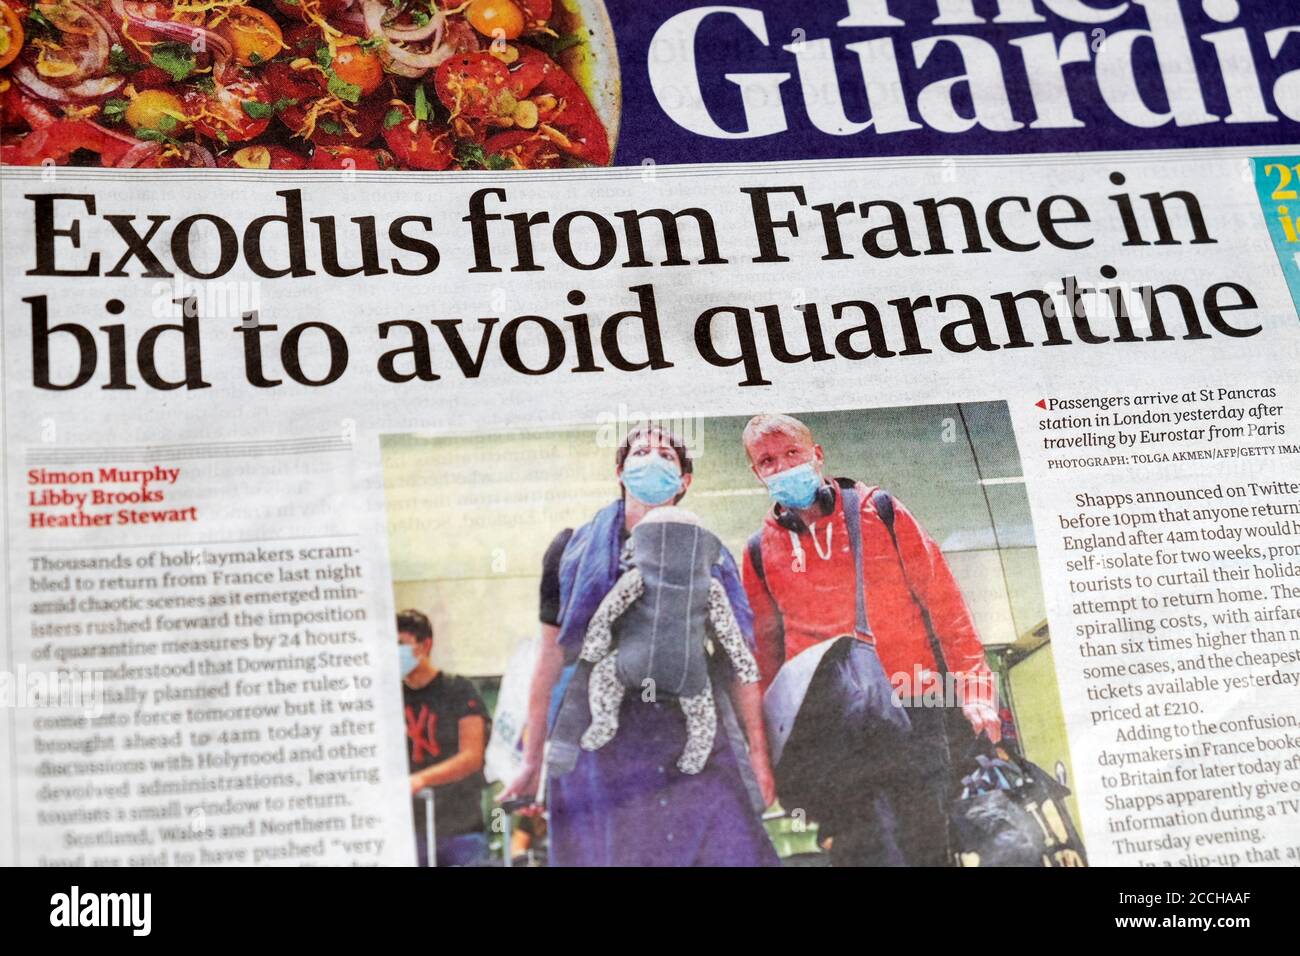 "Exode de France pour éviter la quarantaine" voyageurs britanniques Aller à la maison Guardian journal titre première page article en août 2020 Angleterre Royaume-Uni Banque D'Images